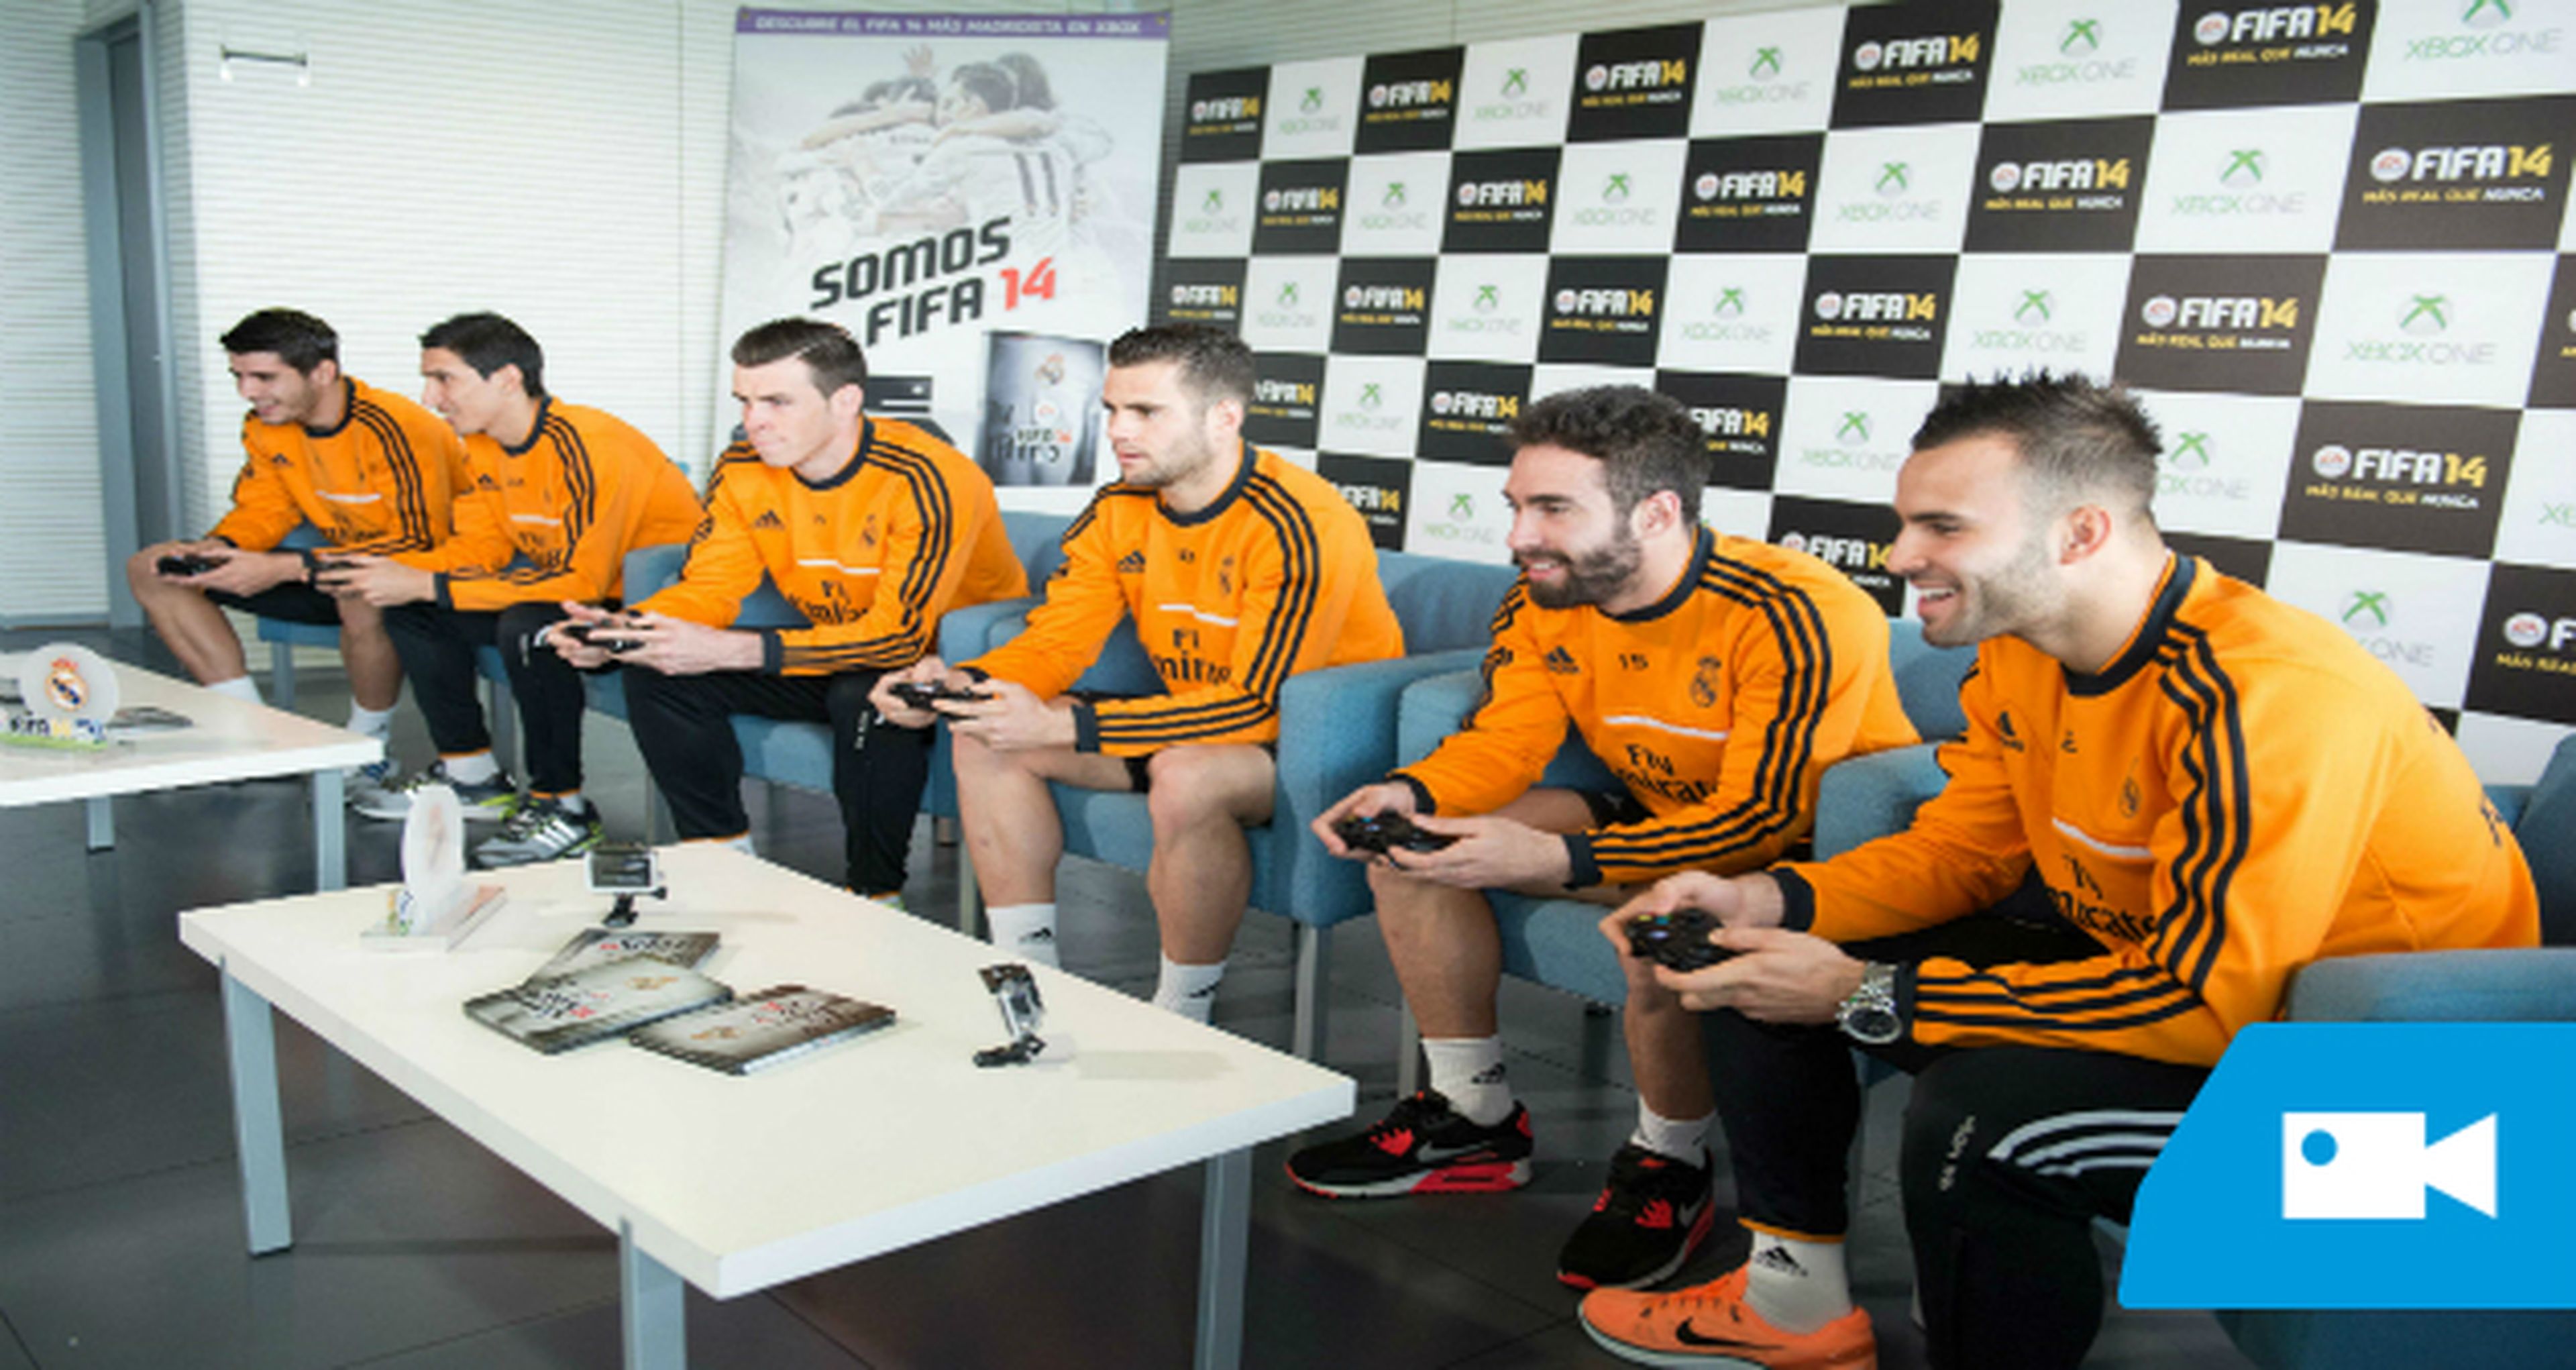 Los jugadores del Real Madrid juegan su torneo de FIFA 14